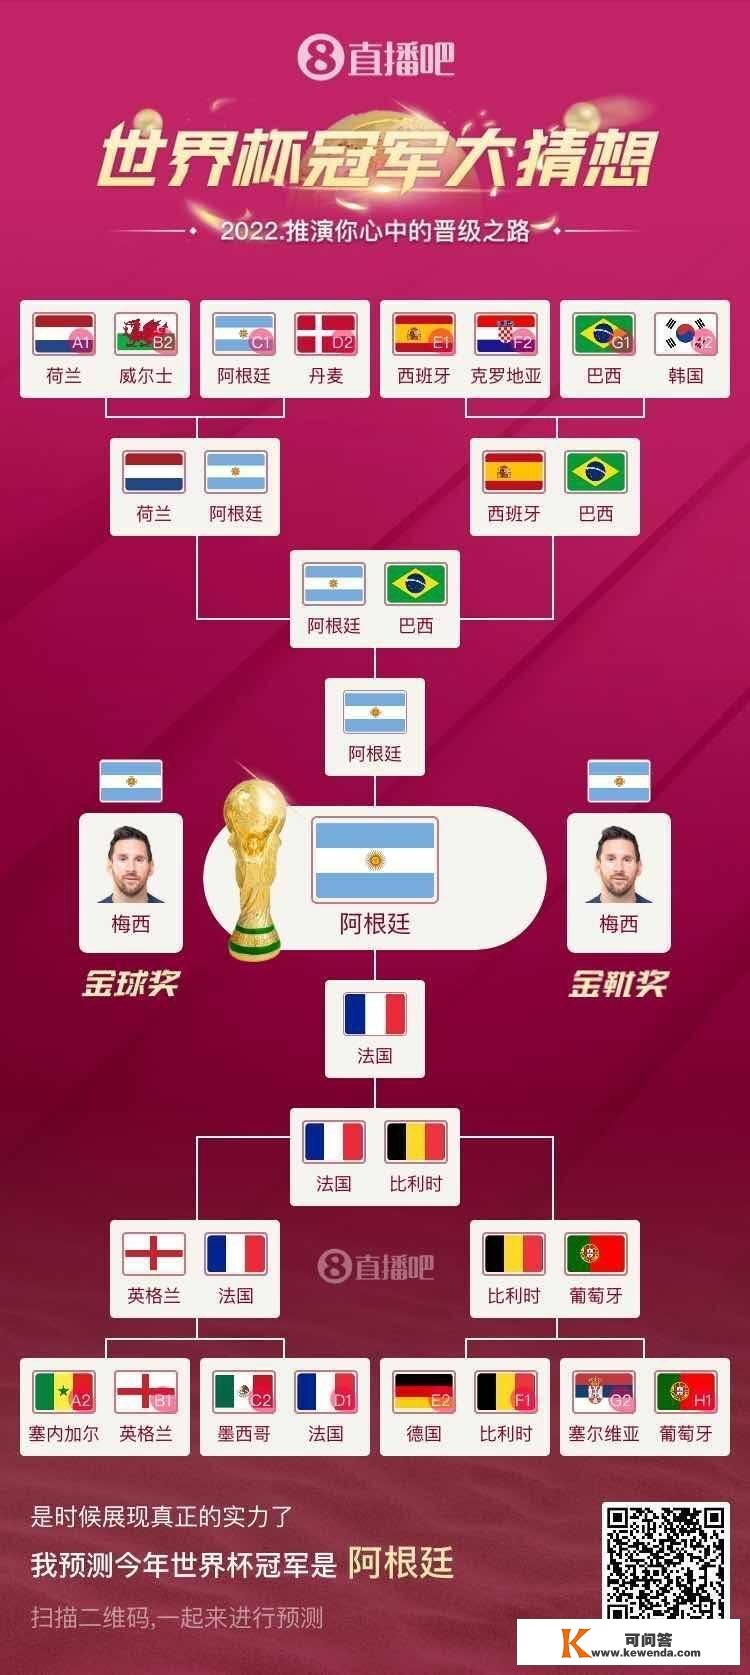 阿根廷vs法国！赛前的曲播吧世界杯预测活动都有谁对了？来分享下